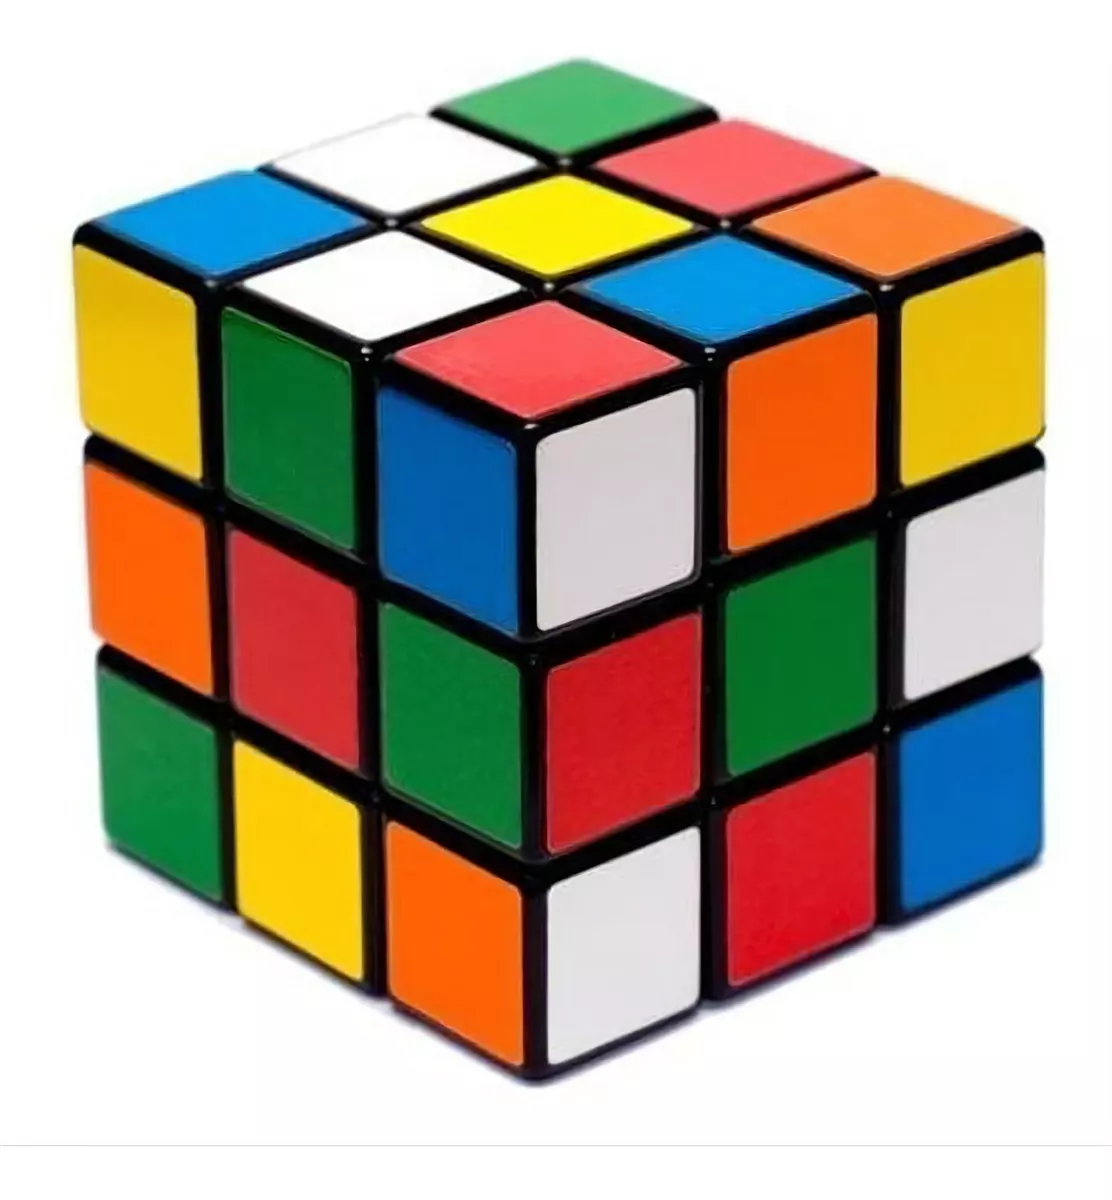 Terceira imagem para pesquisa de cubo magico